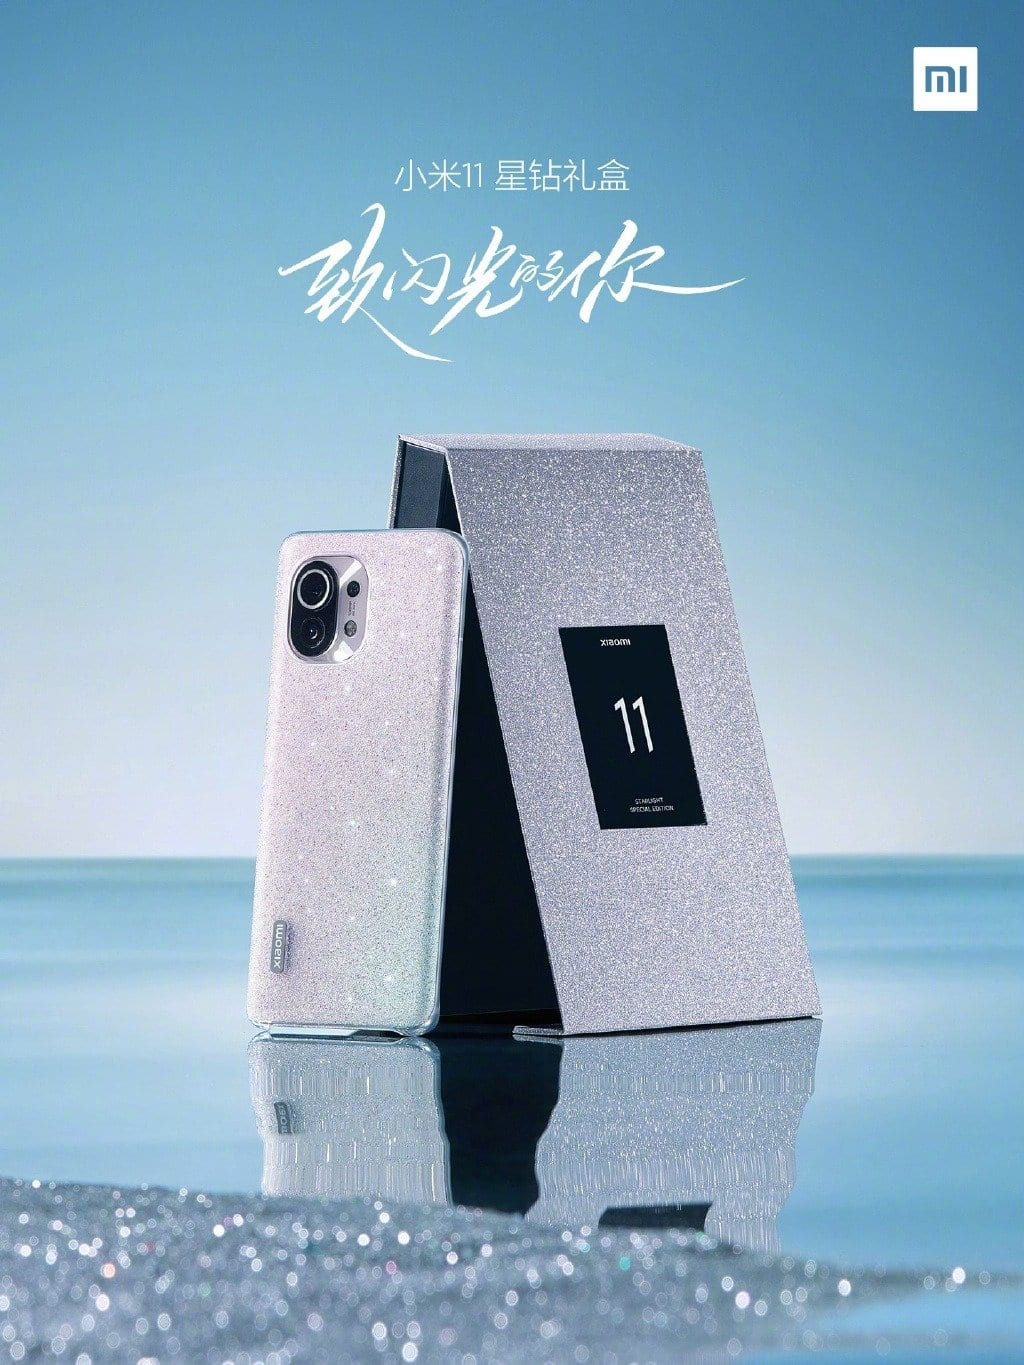 Xiaomi Mi 11 Star Diamond Gift Box Edition com design brilhante lançado na China